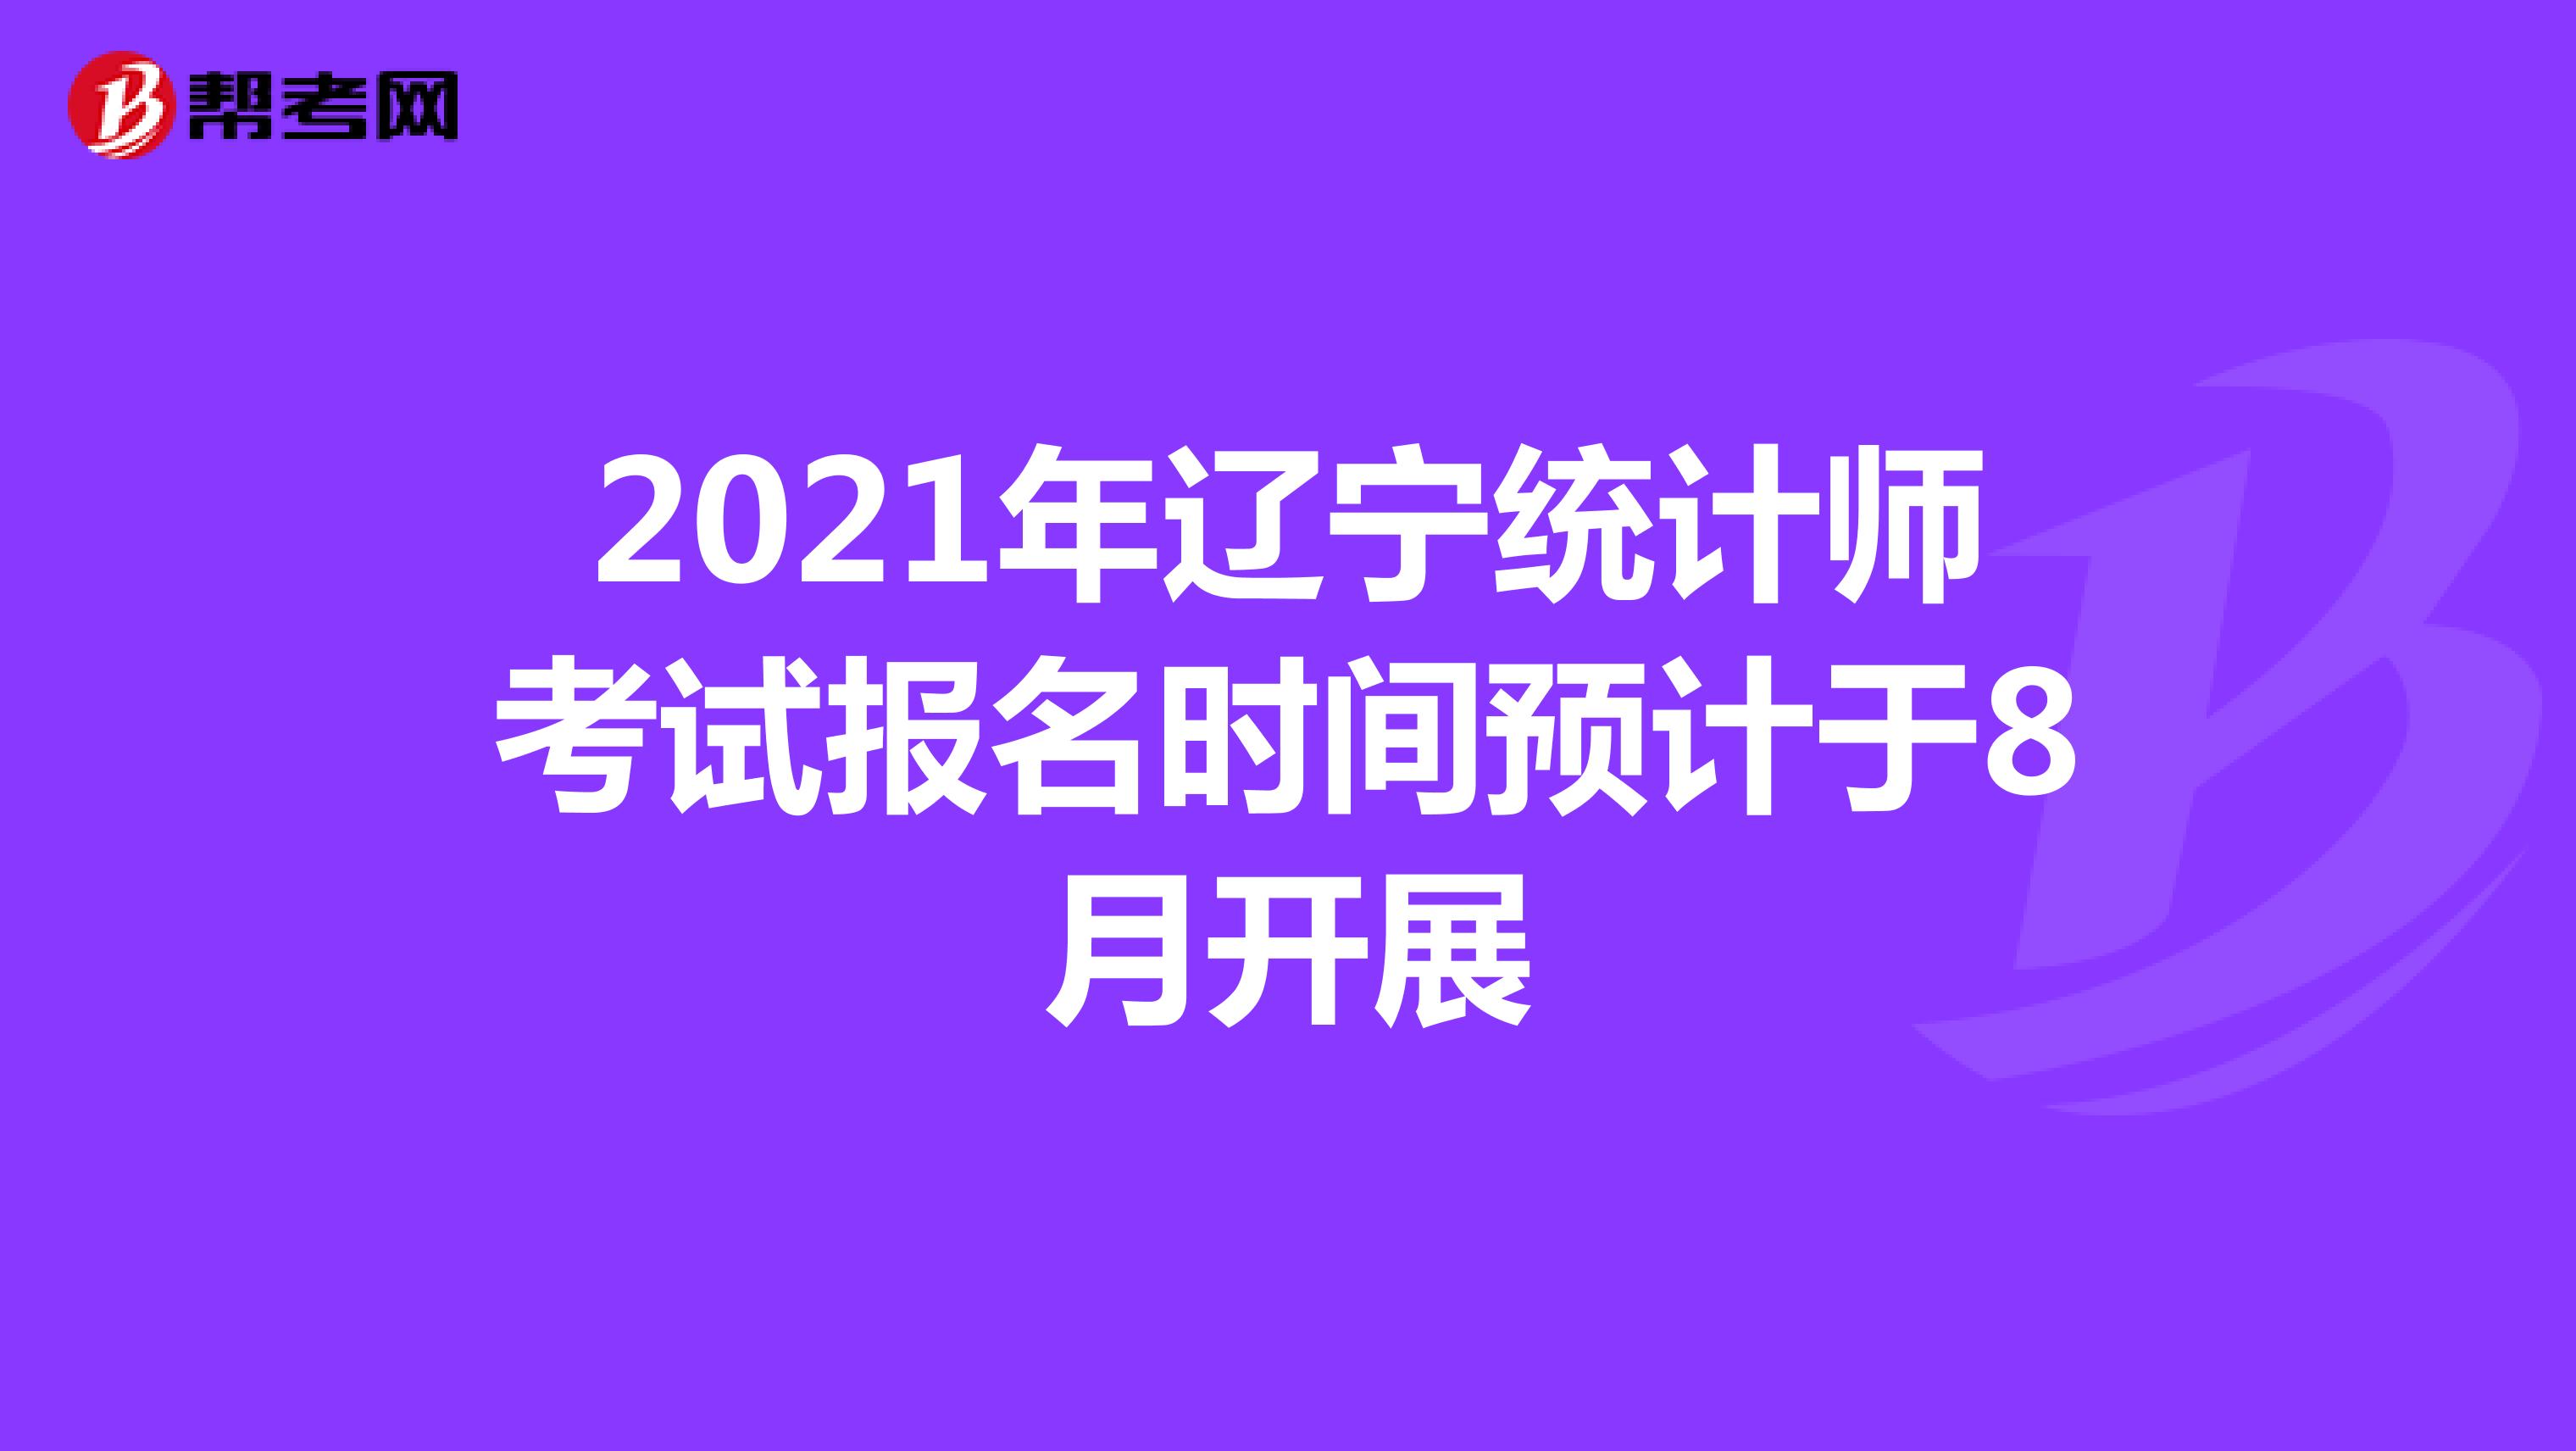 2021年辽宁统计师考试报名时间预计于8月开展